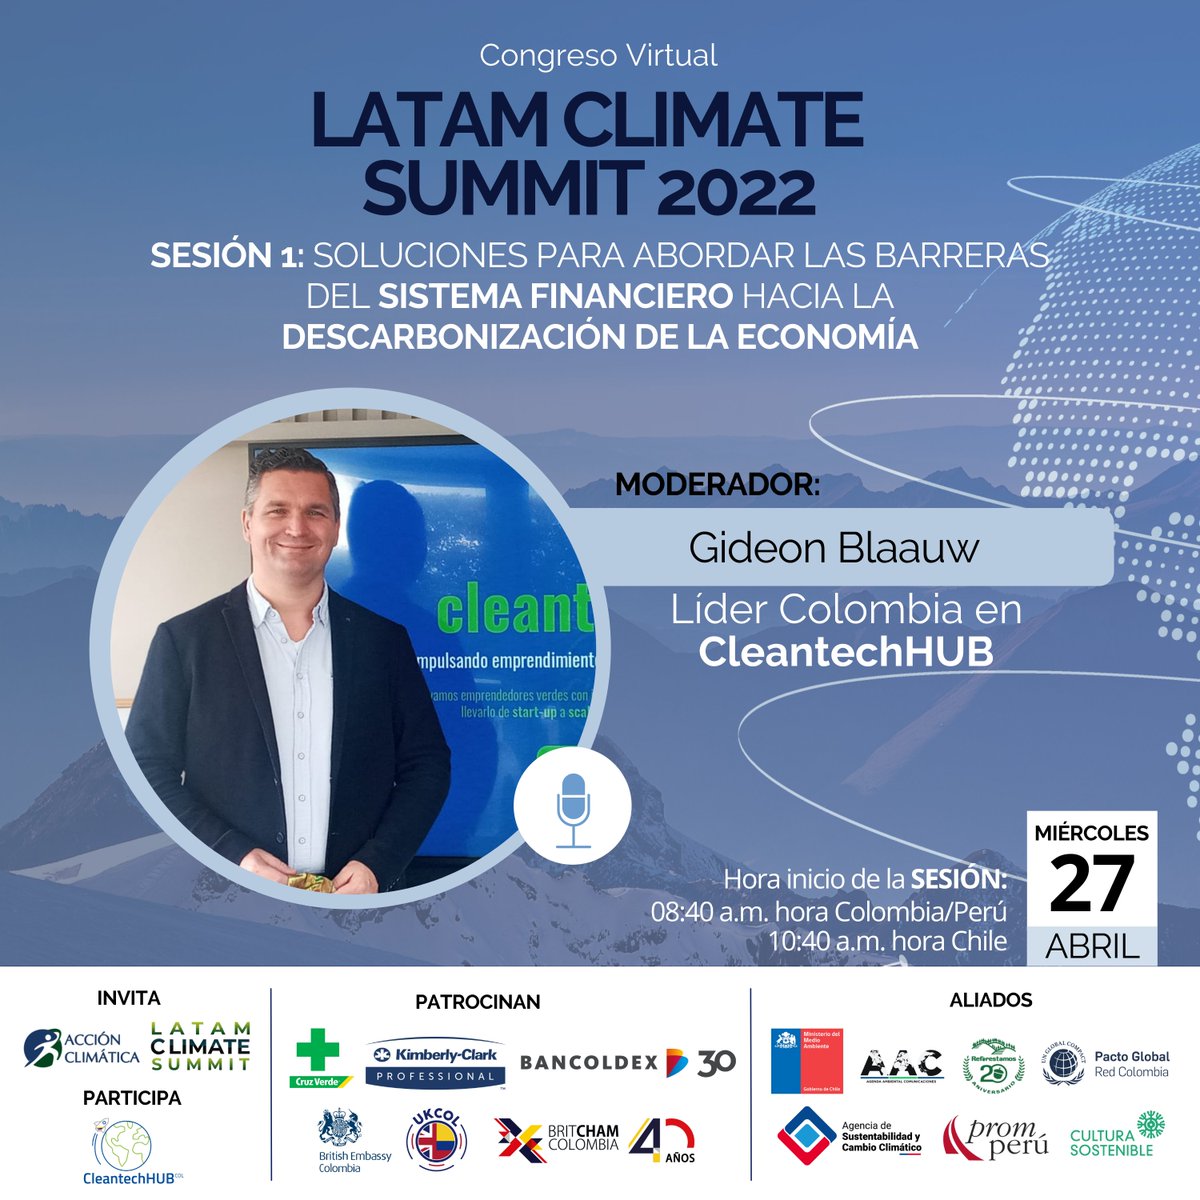 #LatamClimateSummit | Te invitamos a participar en la sesión 1: “Soluciones para abordar las barreras del sistema financiero hacia la descarbonización de la economía''. 

💻🆕 Nos acompañará Gideon Blaauw, Líder Colombia en CleantechHUB.

Inscripciones: lnkd.in/gMSsEbTU